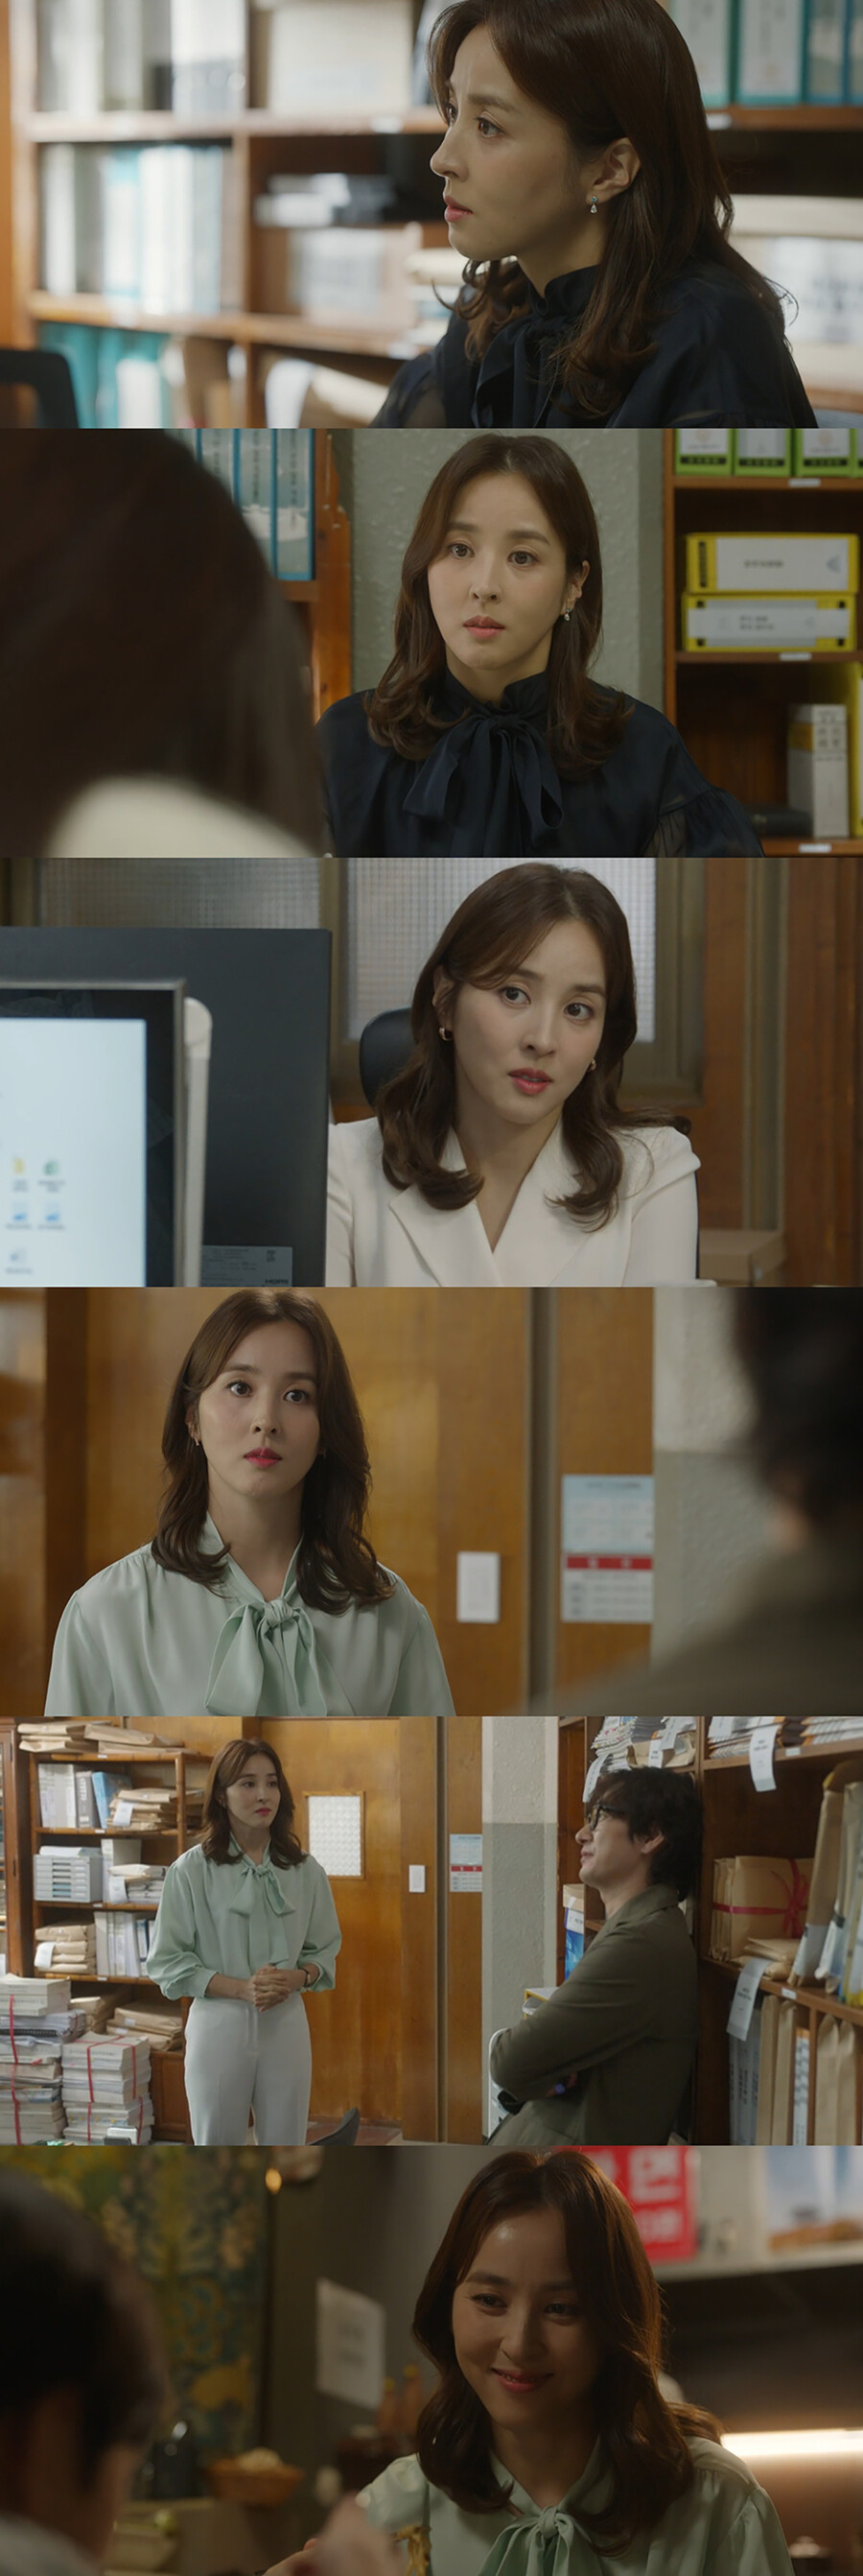 ▲ 배우 한혜진. 출처| JTBC '신성한, 이혼' 방송 화면 캡처